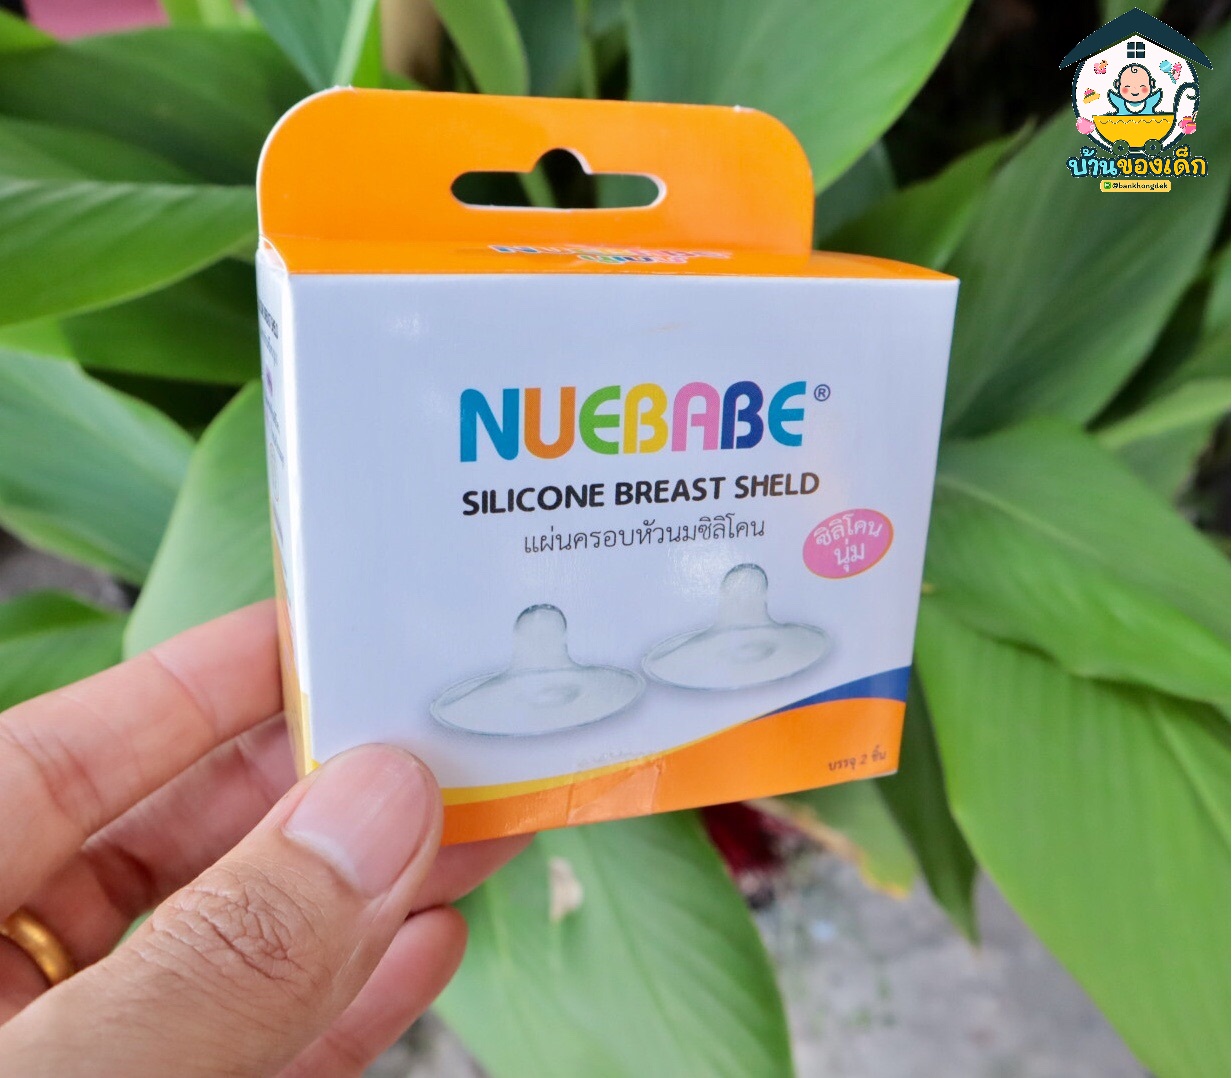 Nuebabe แผ่นครอบหัวนมซิลิโคน Silicone Breast Sheld บรรจุ 2 ชิ้น